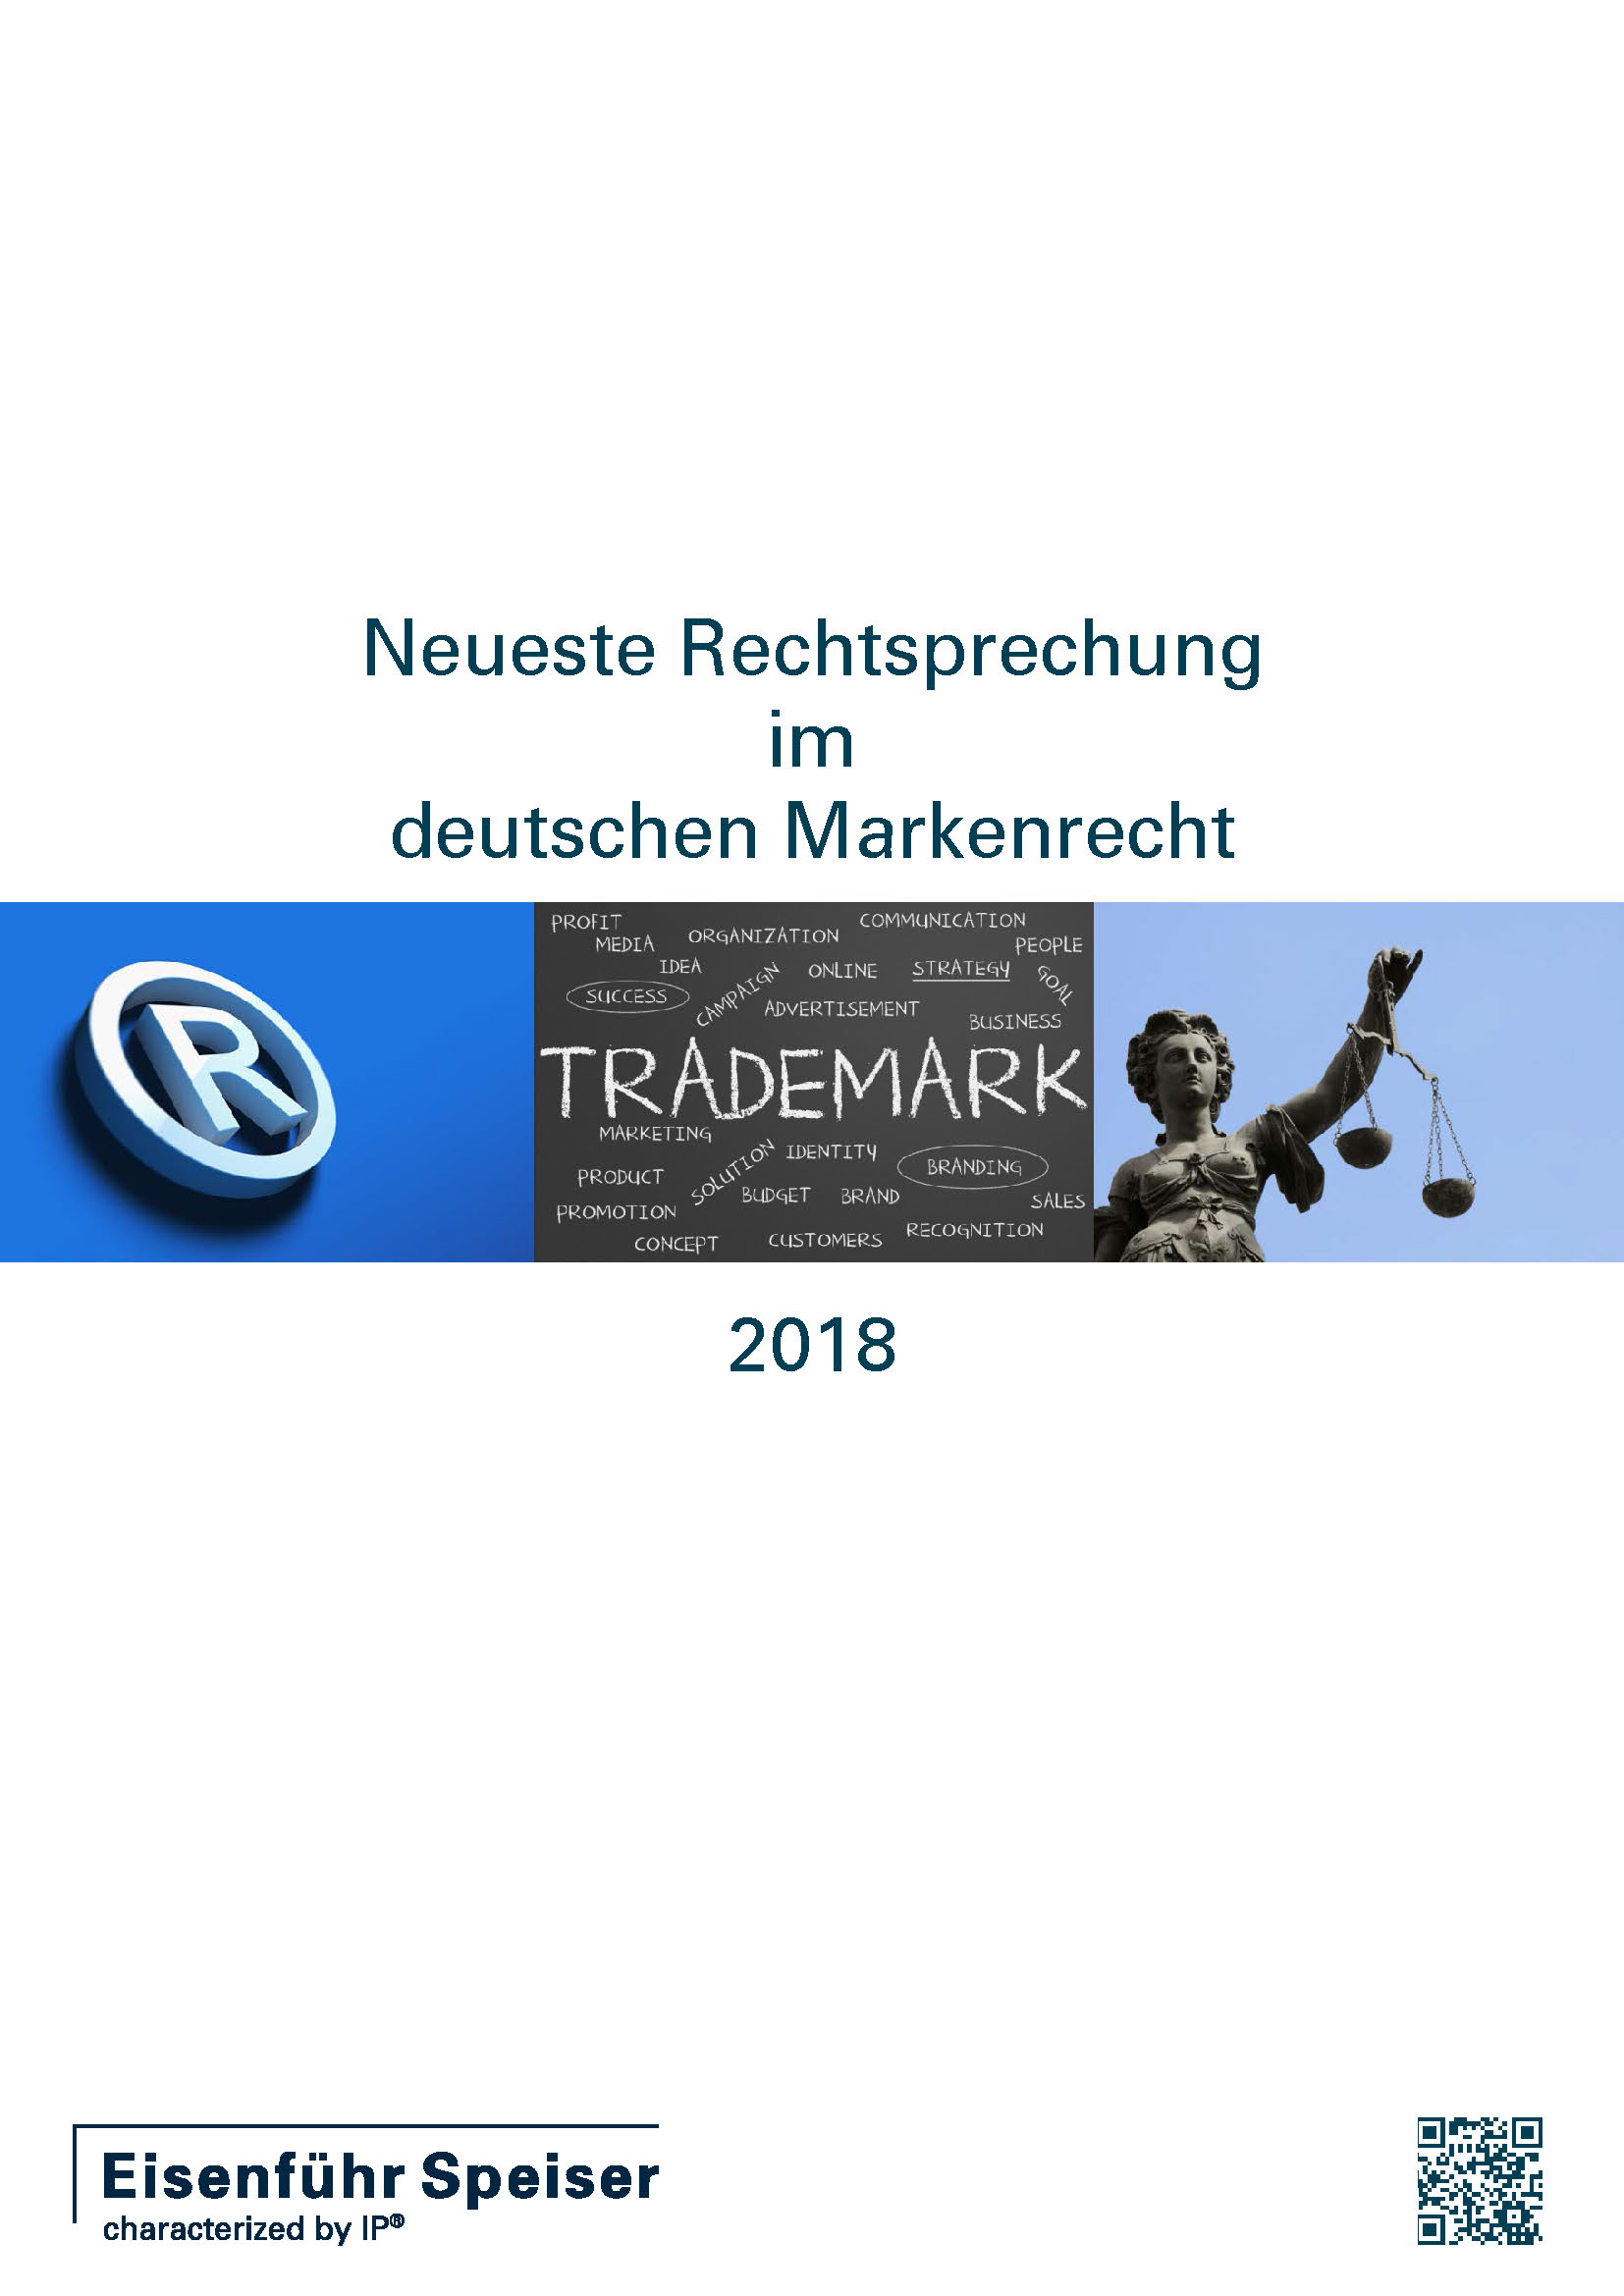 Neueste Rechtsprechung im deutschen Markenrecht 2018